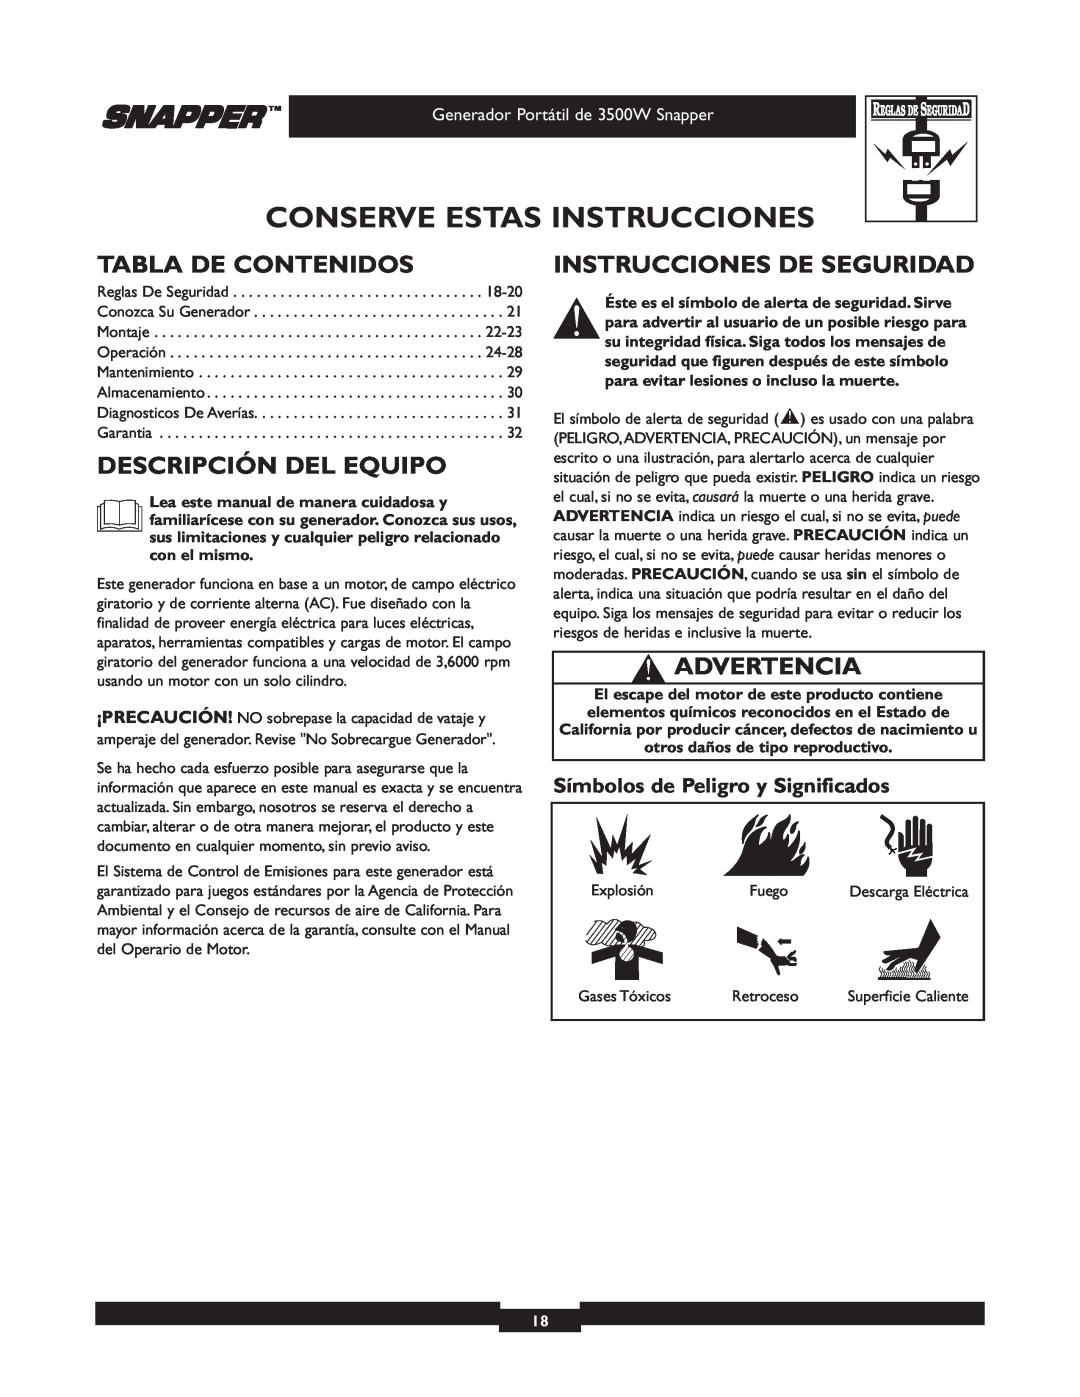 Snapper 3500 manual Tabla De Contenidos, Descripción Del Equipo, Instrucciones De Seguridad, Advertencia 